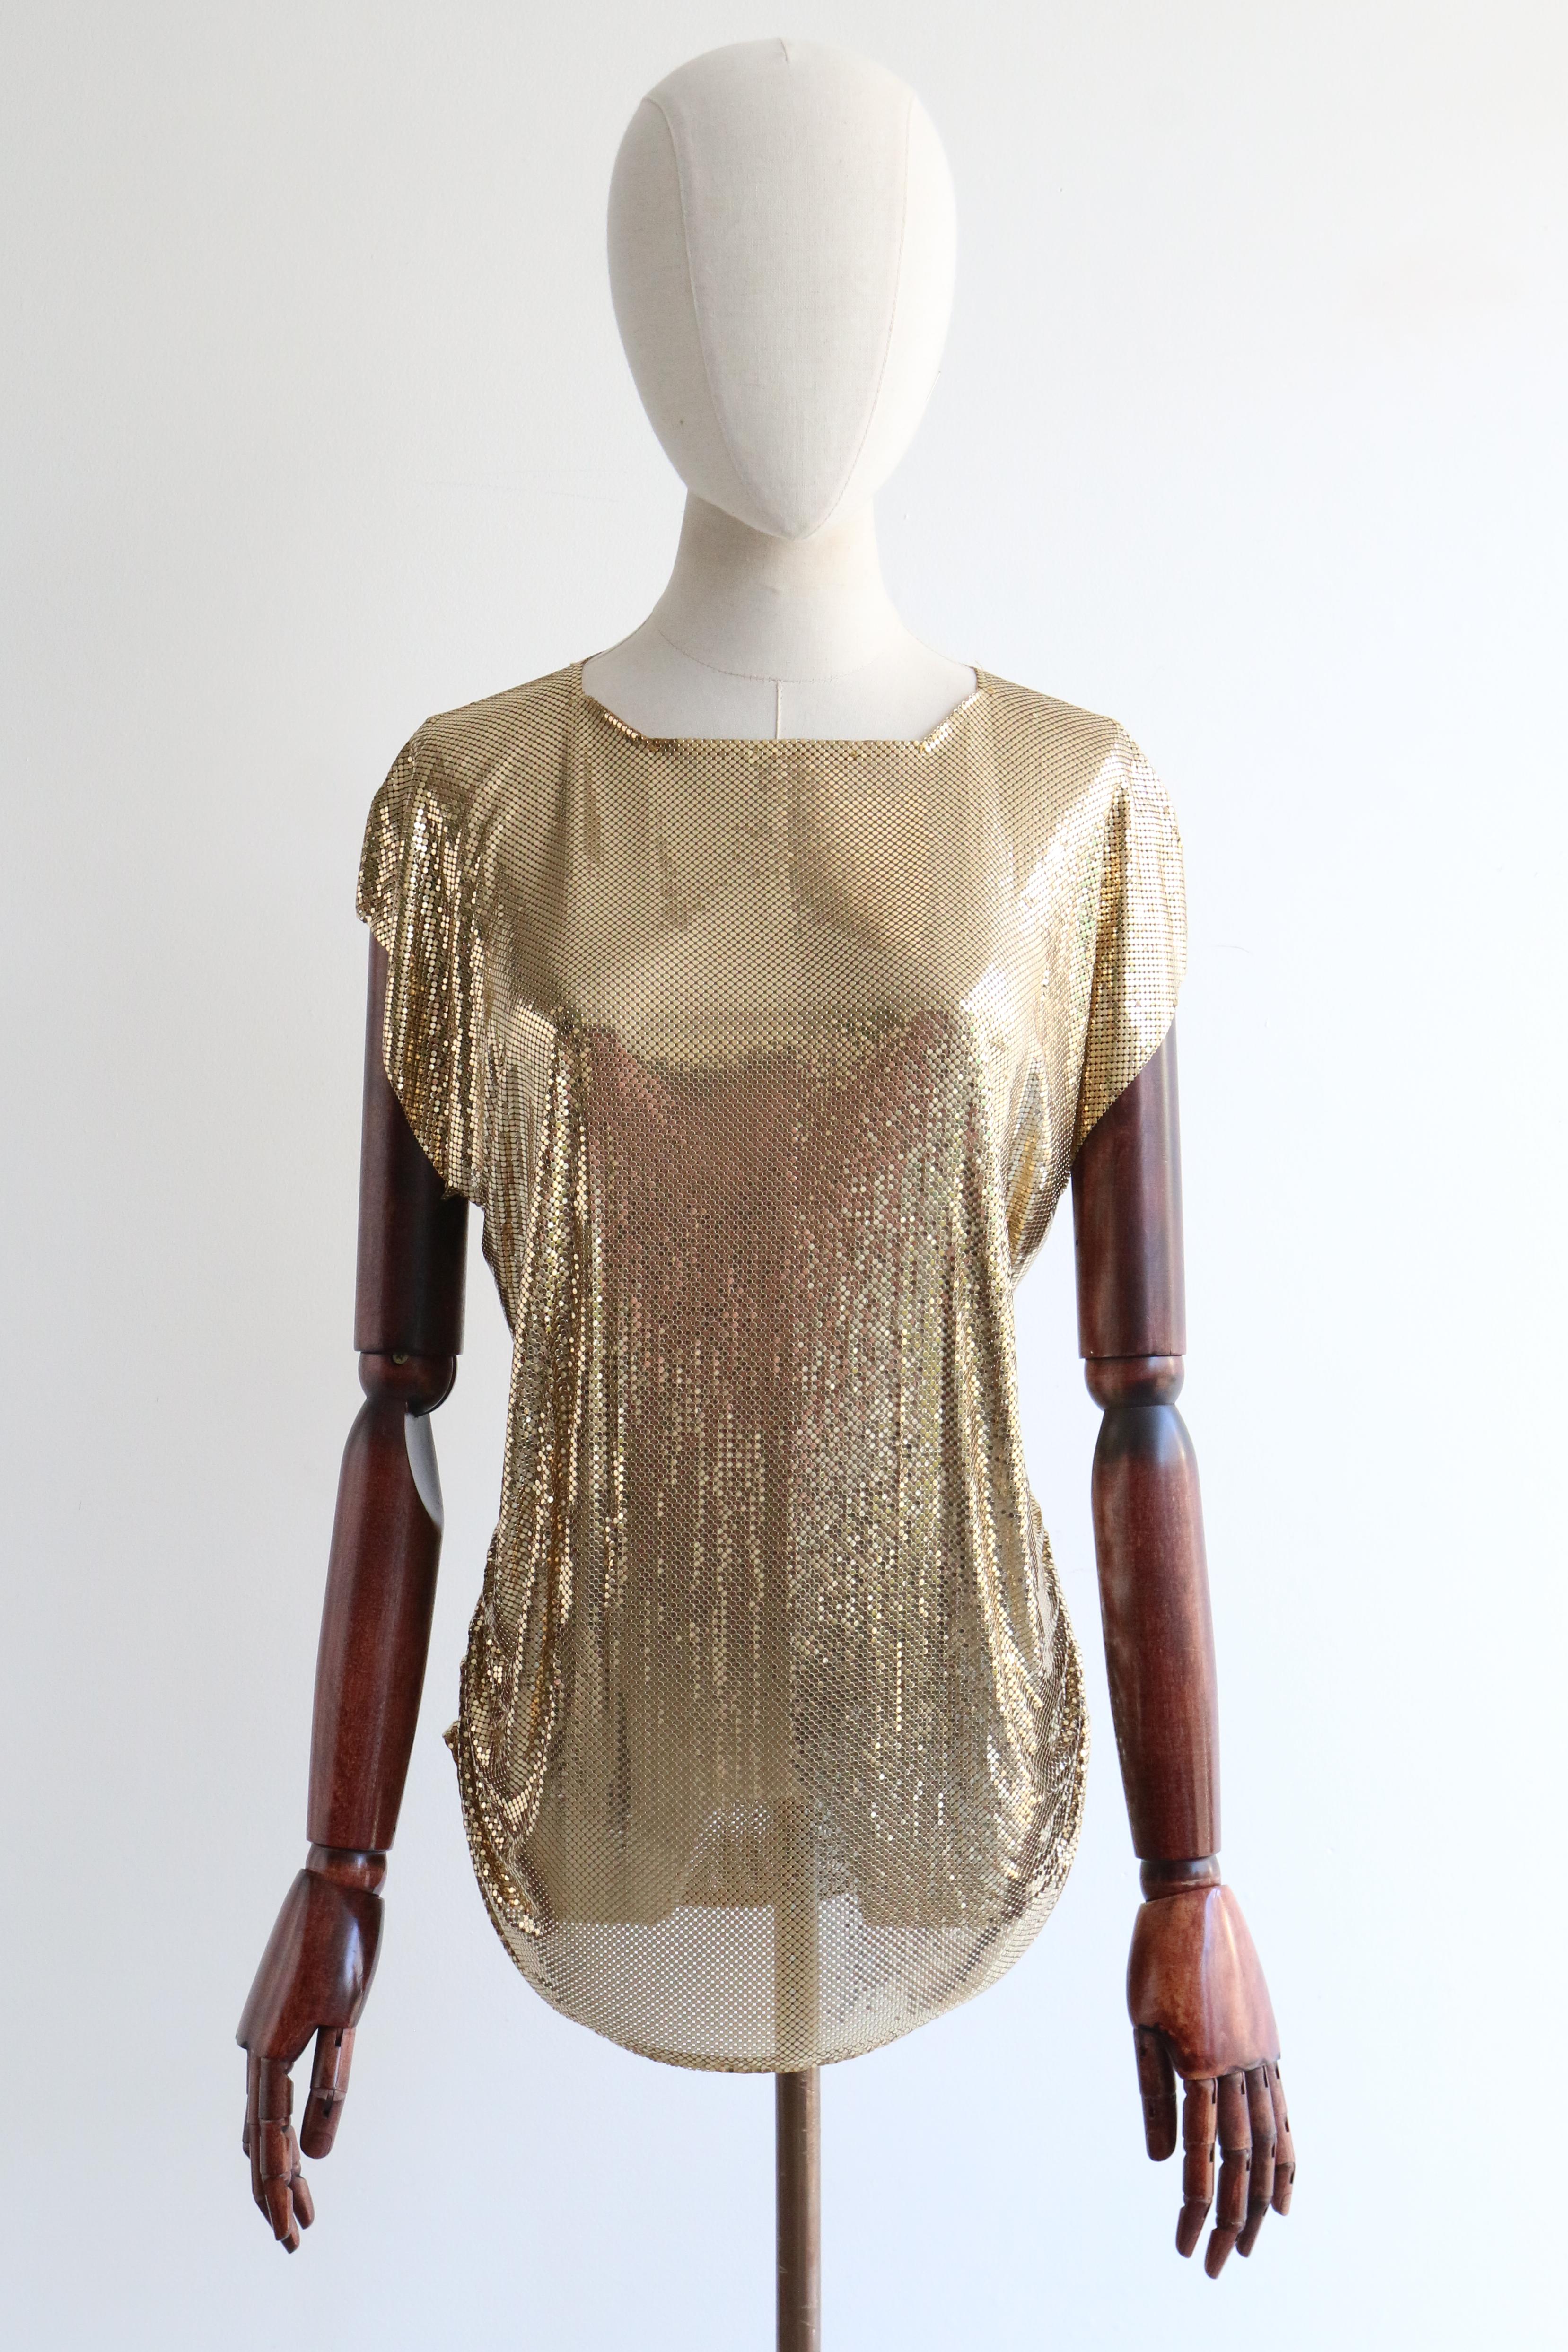 Diese glamouröse goldene Netzbluse von Whiting & Davis aus den 1980er Jahren ist das perfekte Stück Modegeschichte für Ihre Cocktailgarderobe. 

Der eckige, quadratische Ausschnitt ist mit einem Schrägband eingefasst und wird von einer einfachen